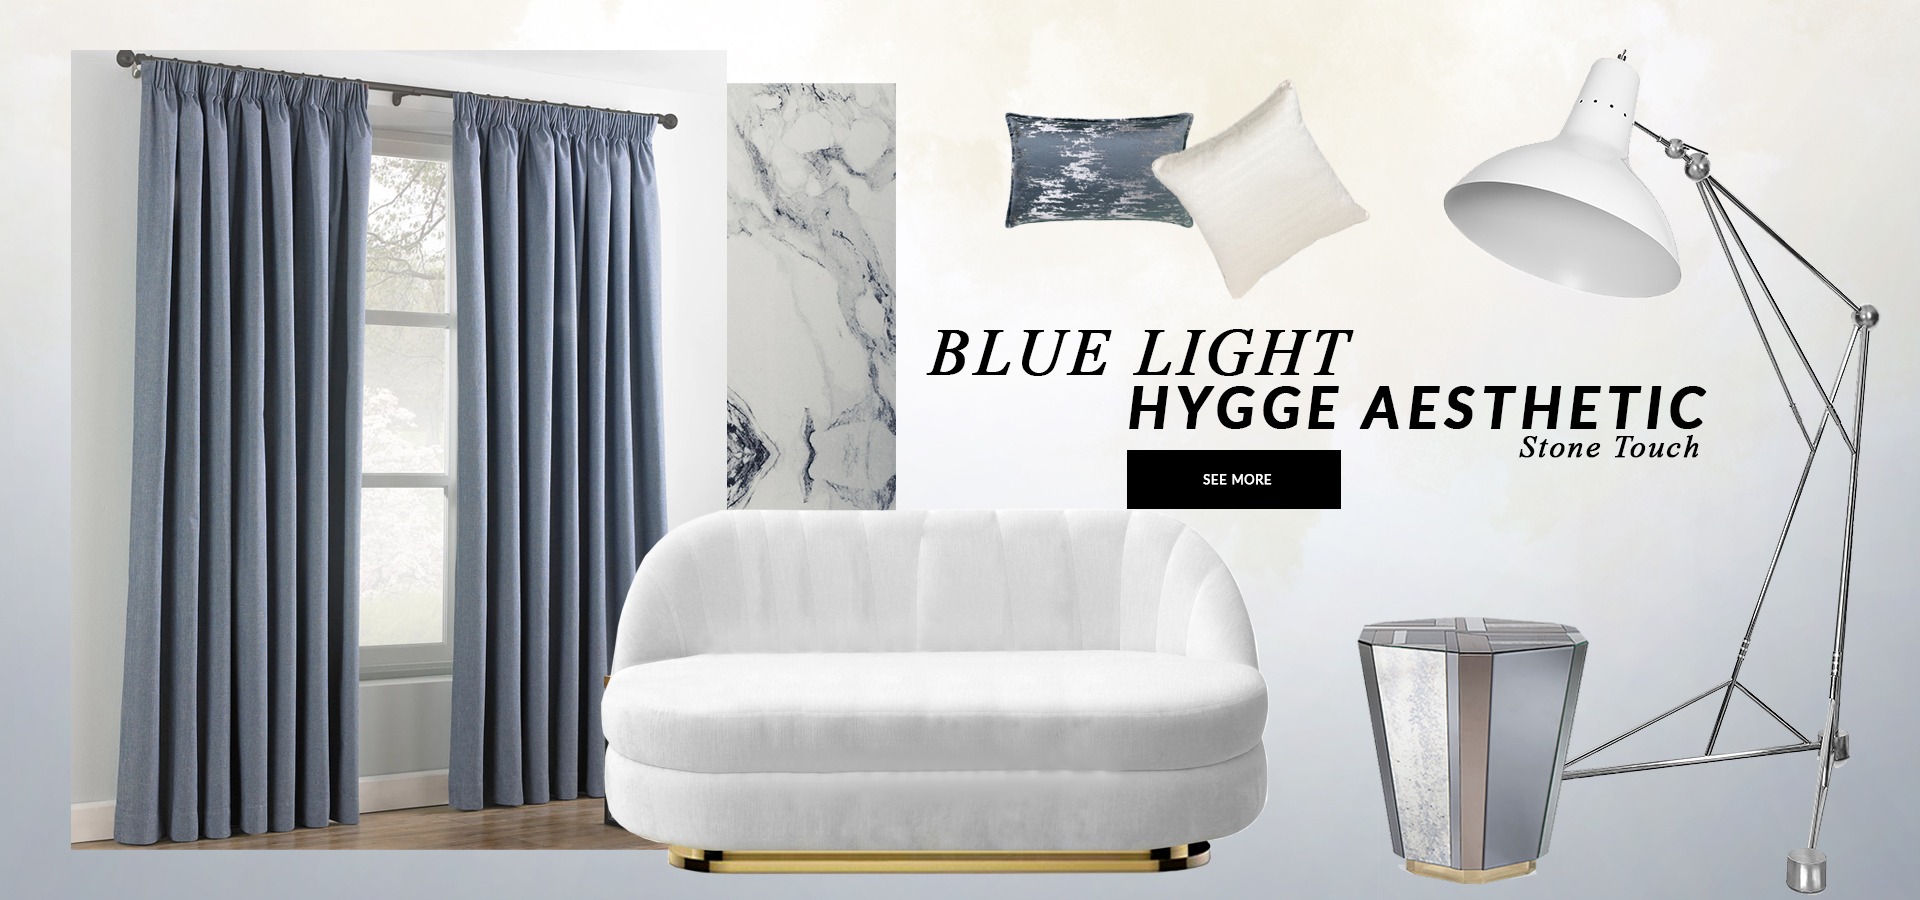 BlueLight HyggeAesthetic Trends